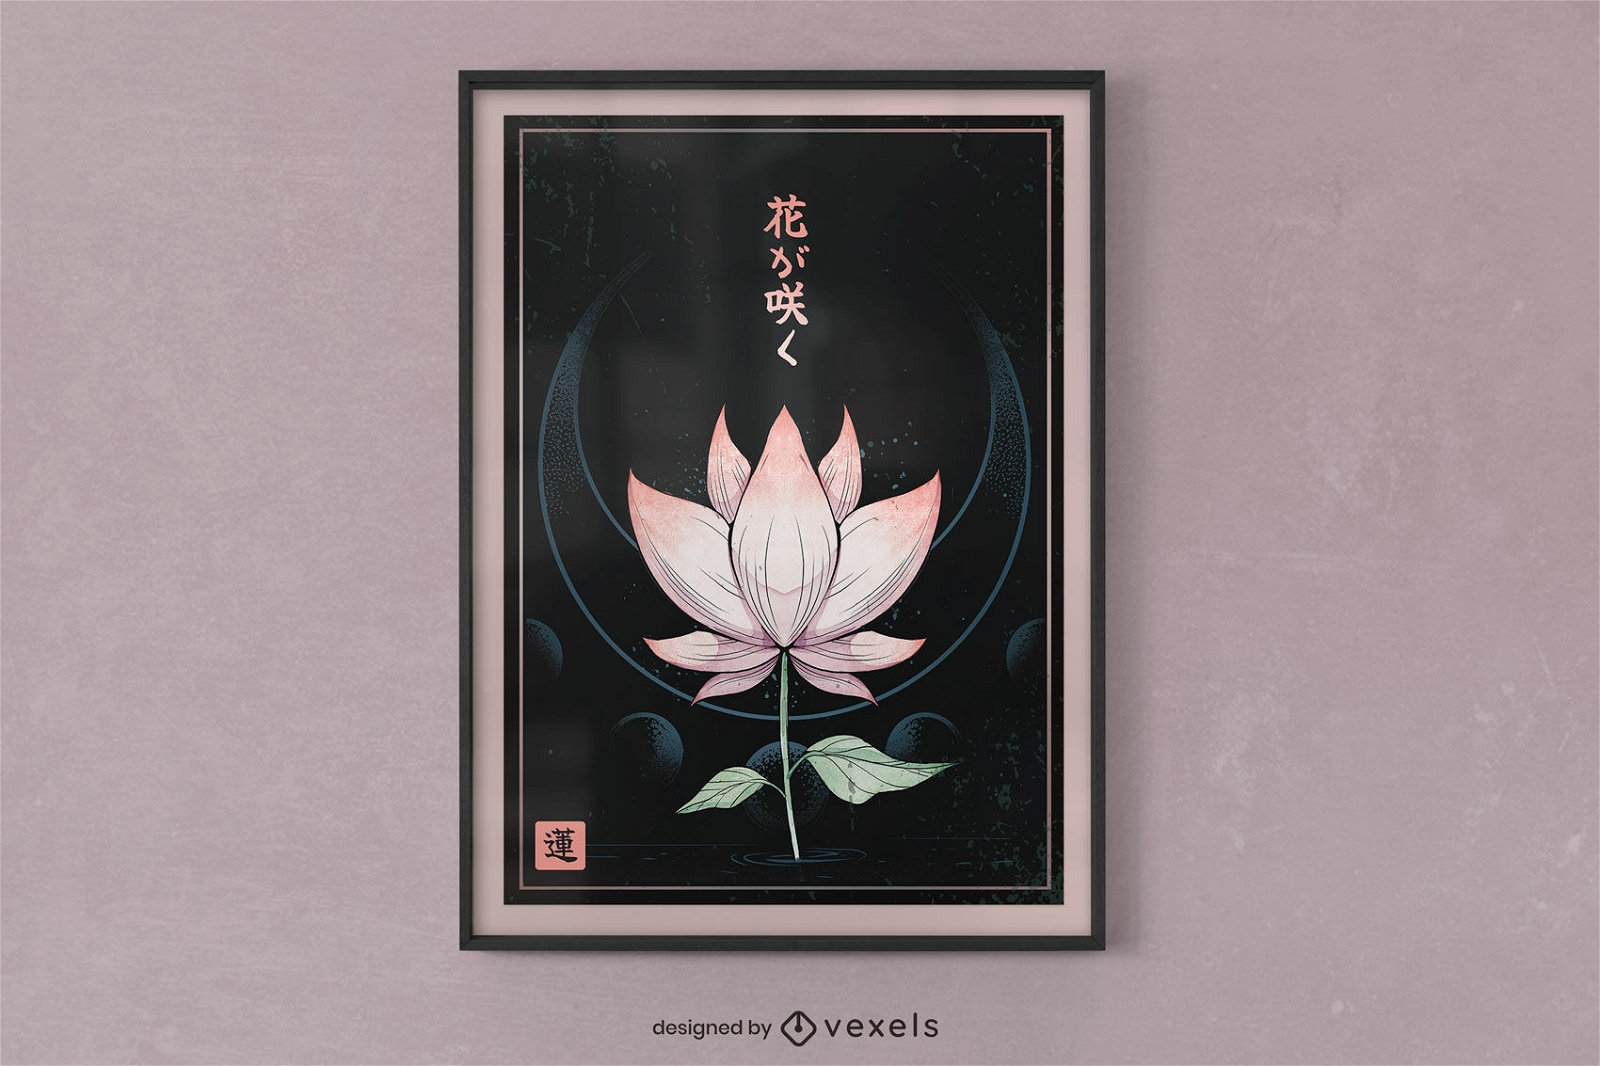 Dise?o de cartel espiritual de flores de loto.